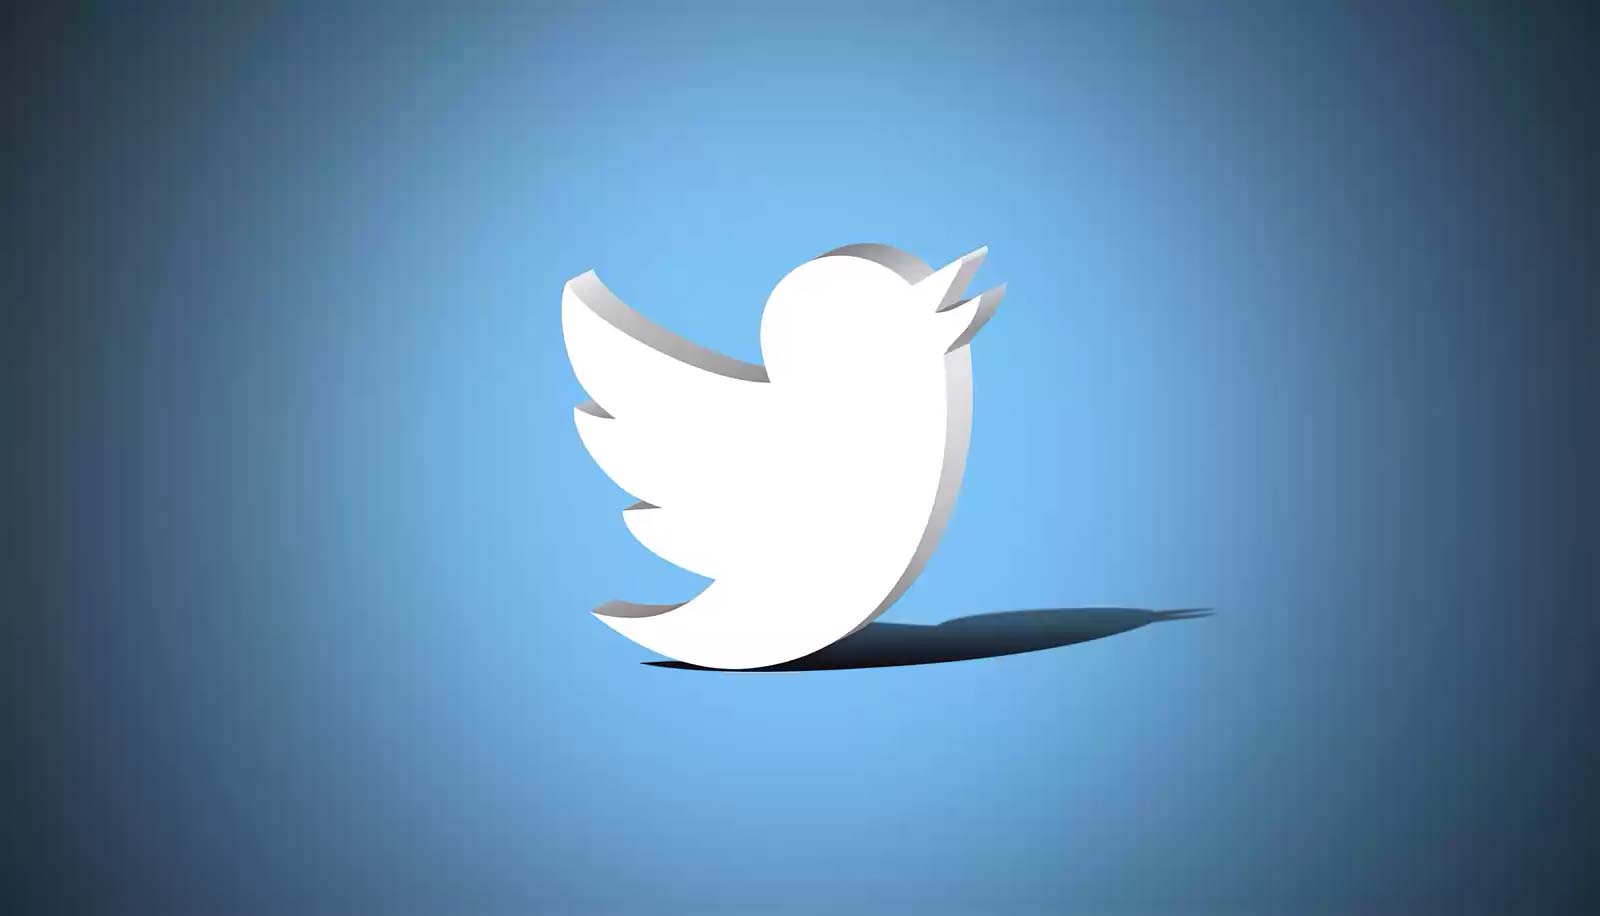 Promoción musical: Las mejores prácticas en Twitter